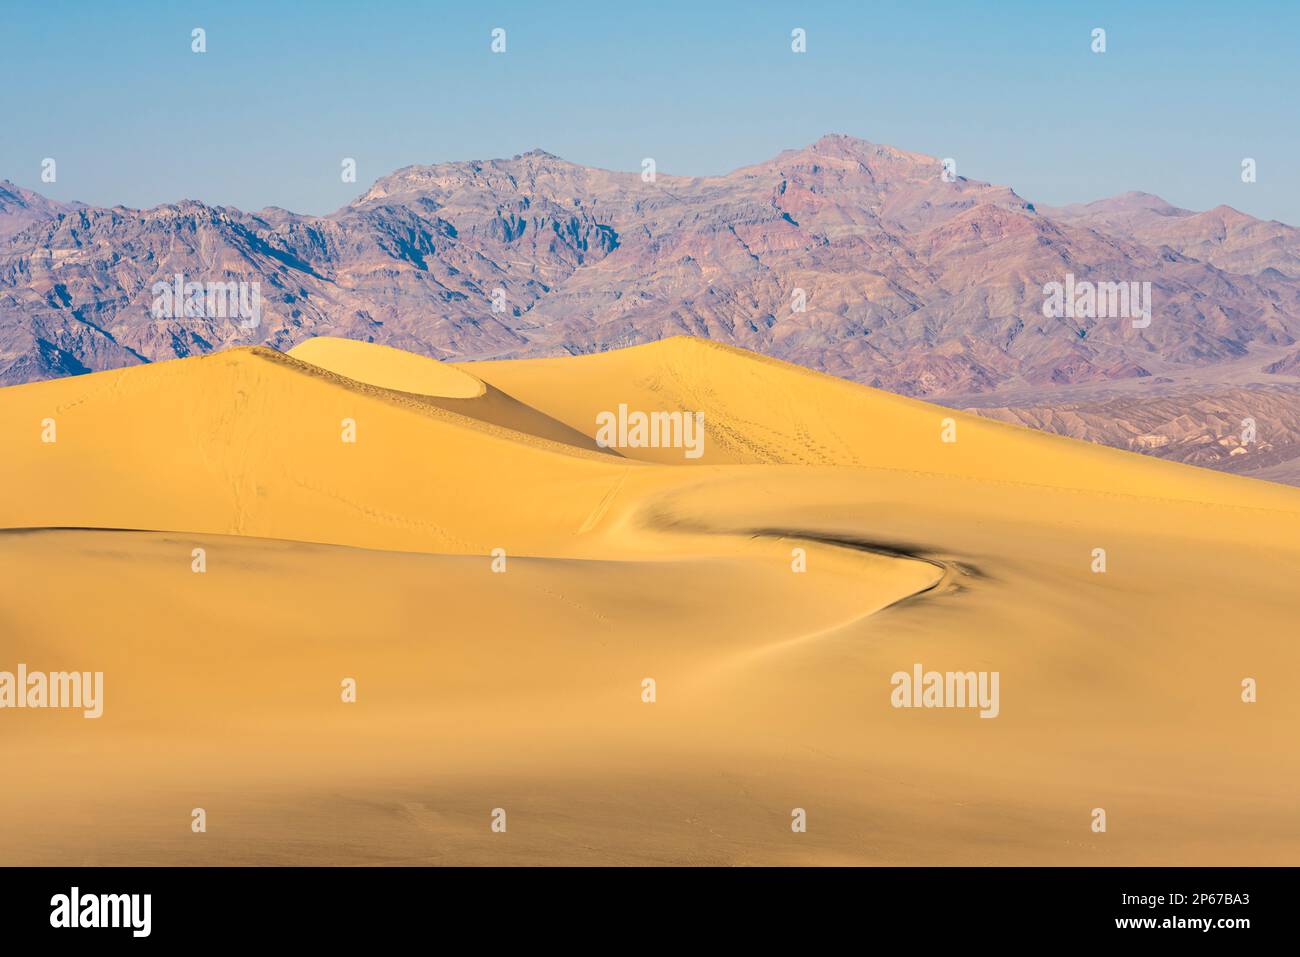 Dunes de sable de Mesquite Flat et montagnes rocheuses dans le désert, parc national de la Vallée de la mort, Californie, États-Unis d'Amérique, Amérique du Nord Banque D'Images